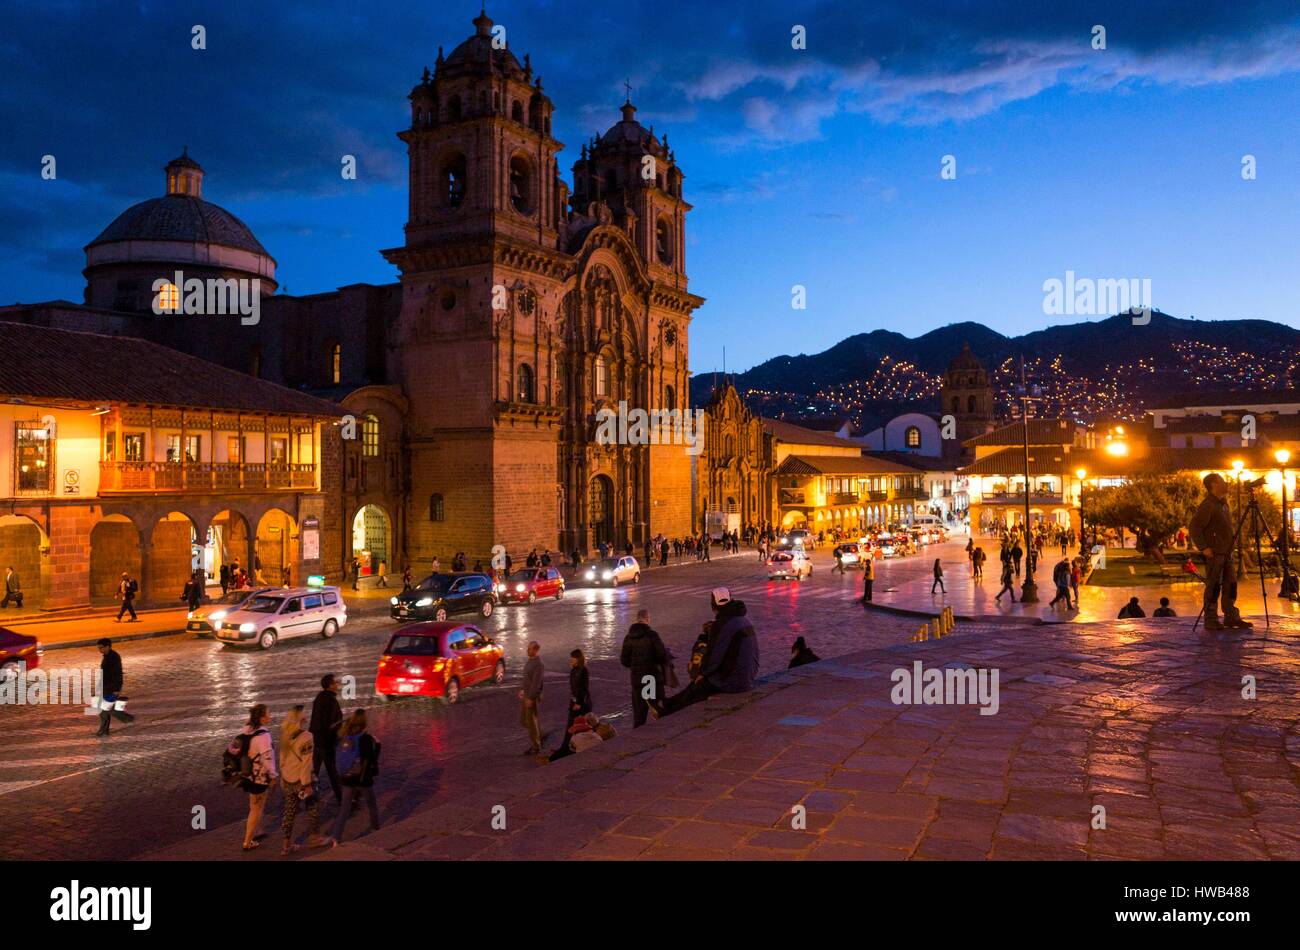 Perù Cusco, classificato come patrimonio mondiale dall UNESCO, Plaza de Armas si trova nelle Ande, la città divenne un sofisticato centro urbano sotto il suo capo inca Pachacutec quando conquistata dagli Spagnoli nel XVI secolo, le vecchie strutture inca sono stati mantenuti come basi per le costruzioni coloniali Foto Stock